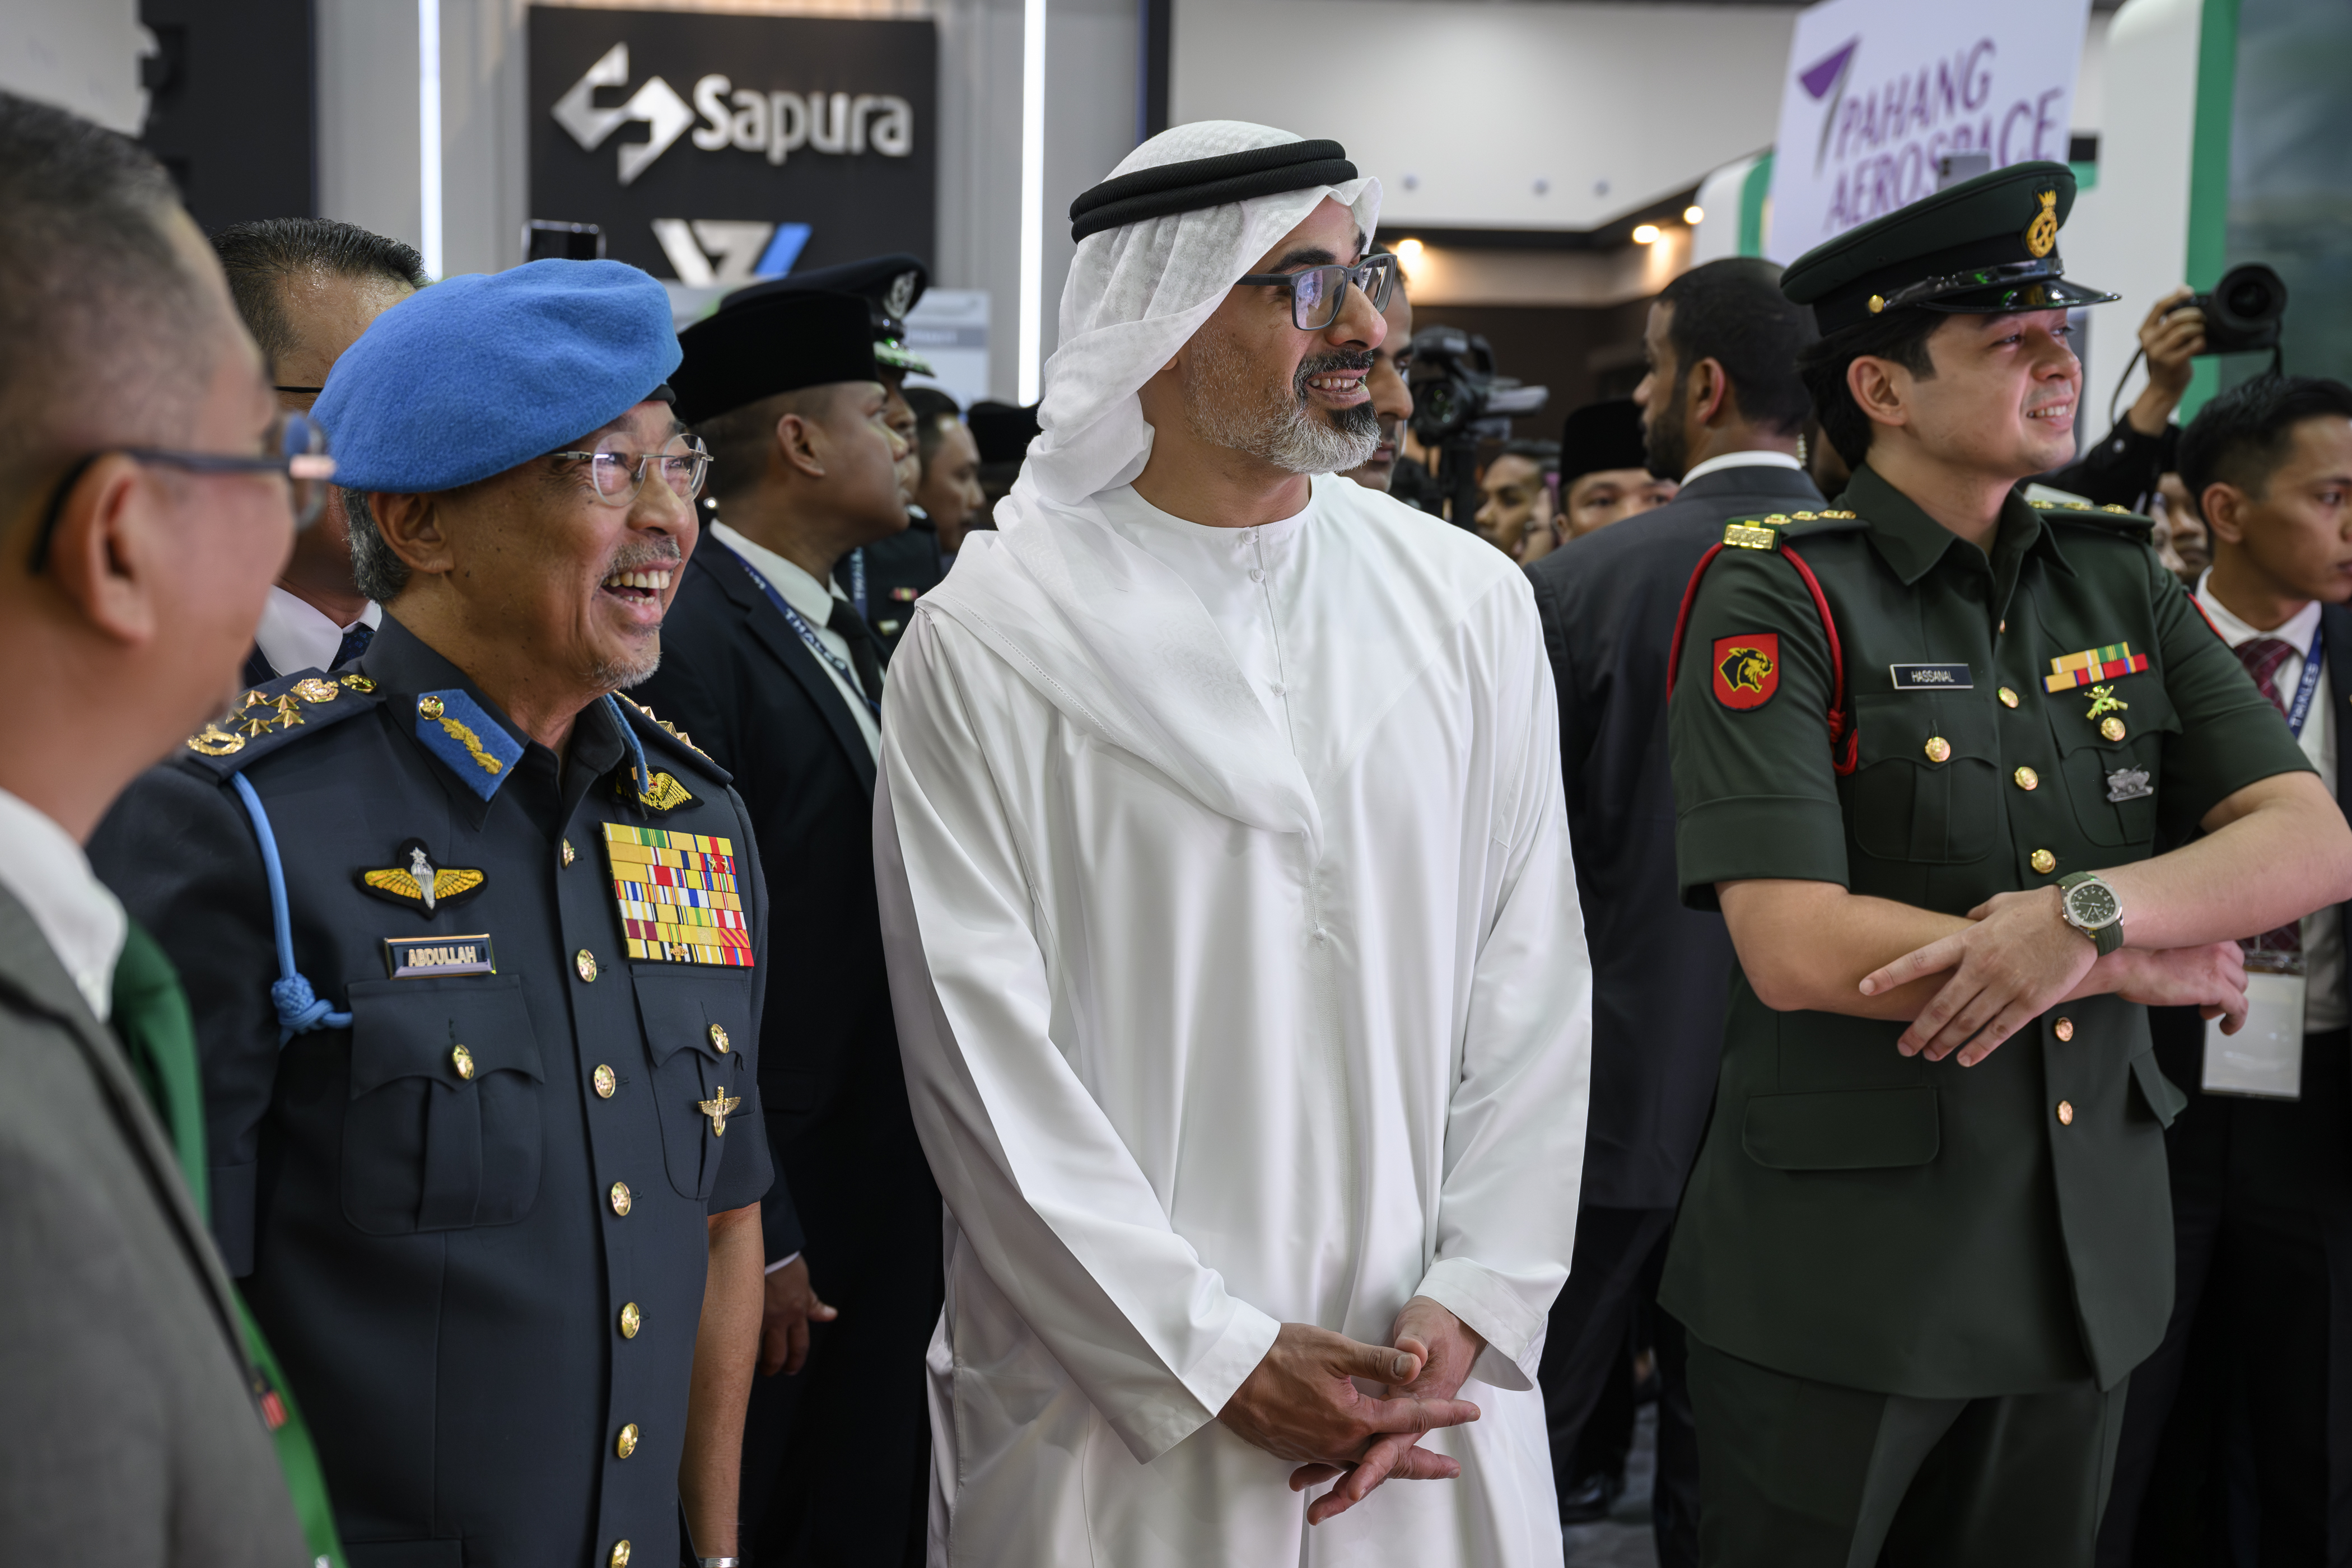 برفقة ملك ماليزيا، خالد بن محمد بن زايد يزور معرض "الملاحة والفضاء"